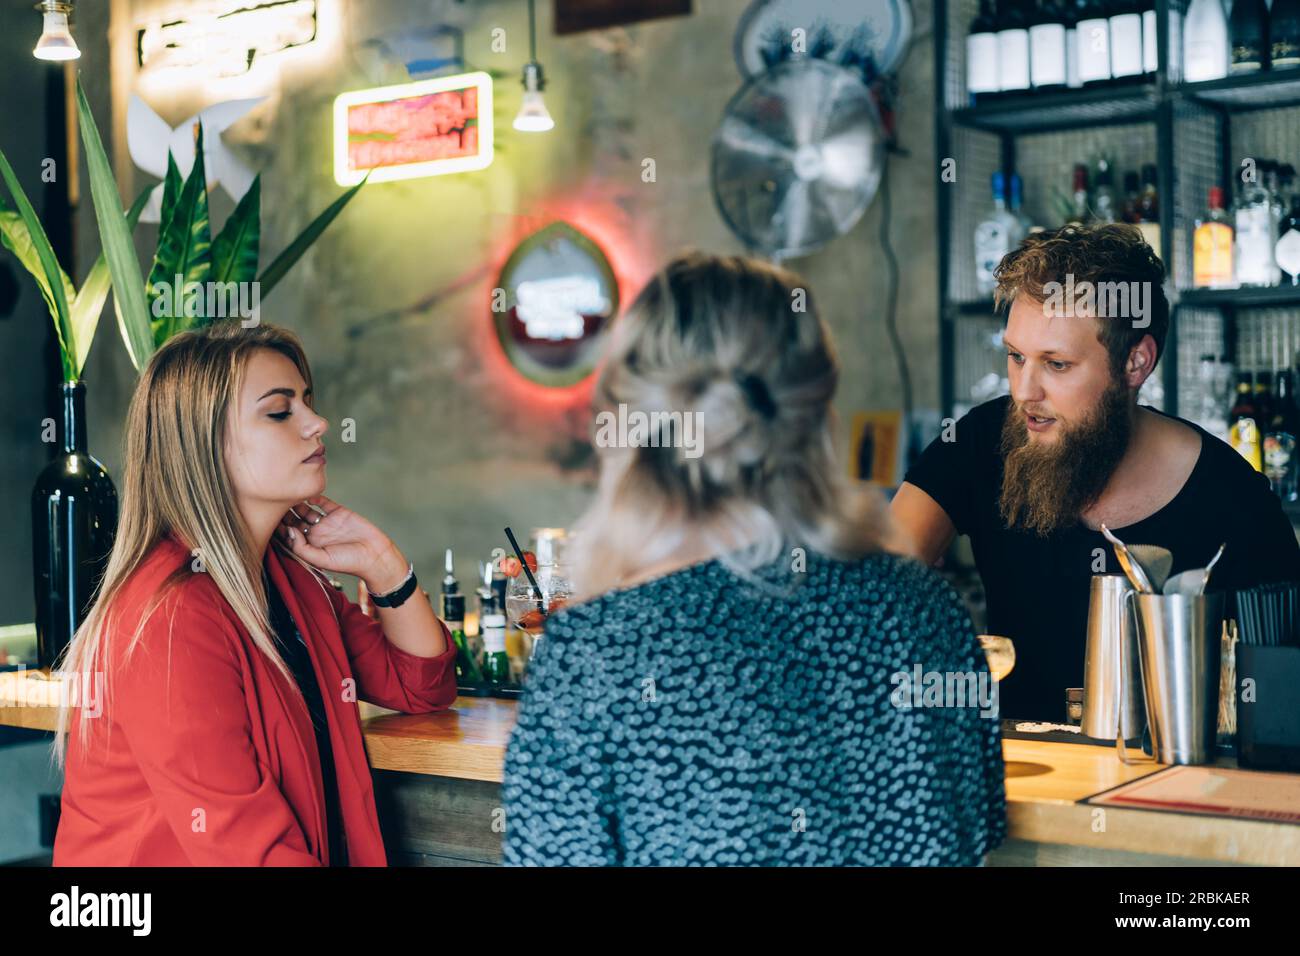 Freunde trinken Einen Drink in Einer Bar neben dem Barkeeper. Stockfoto